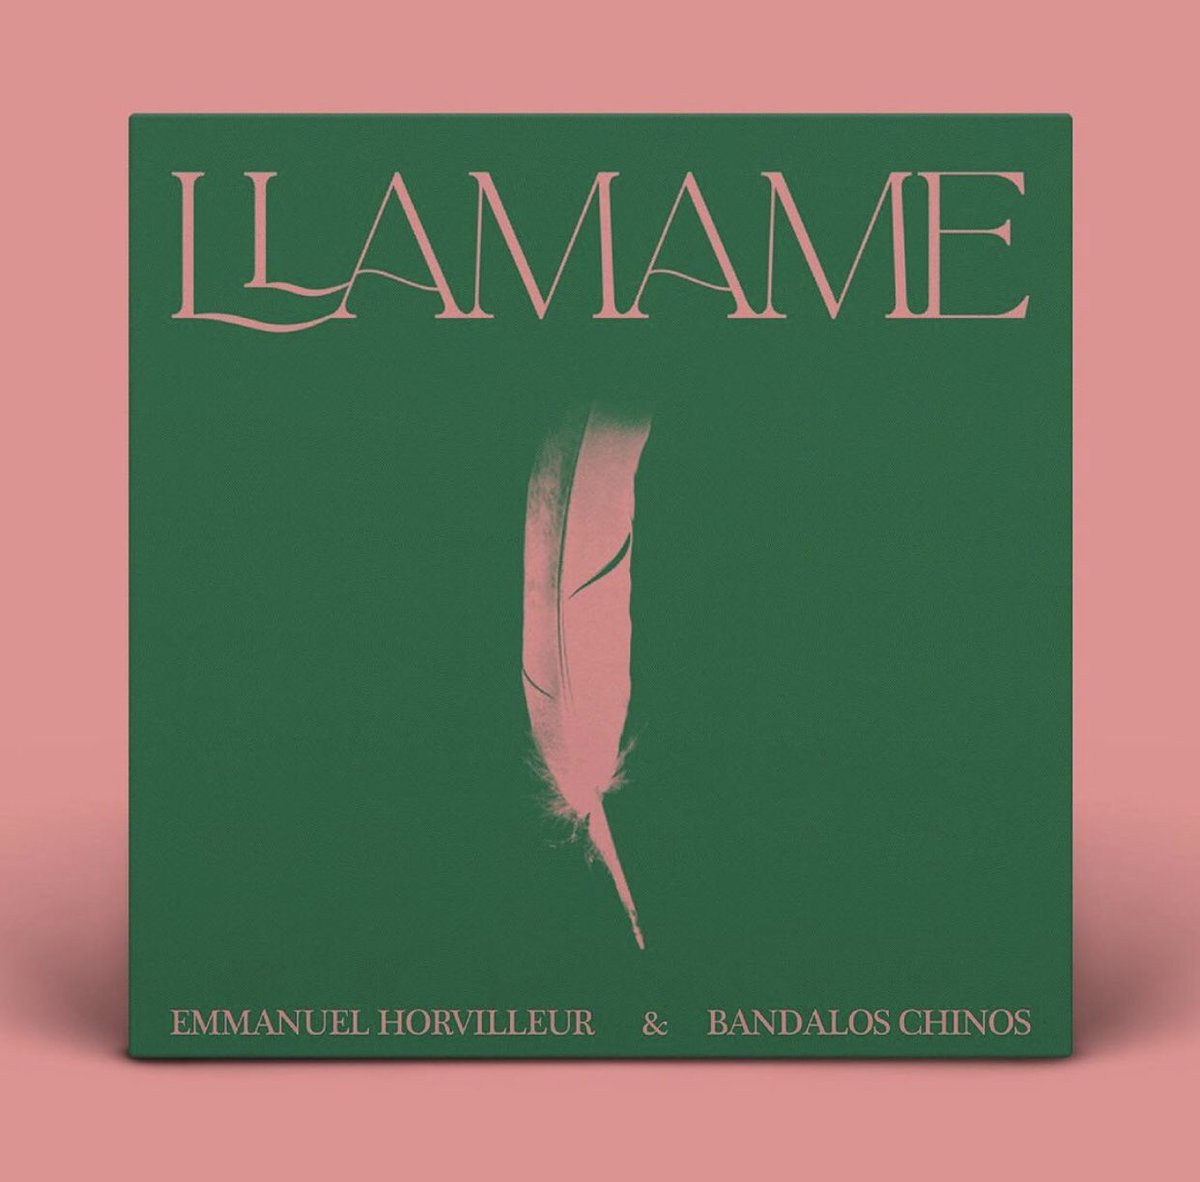 Emmanuel Horvilleur estrena su nuevo single ‘Llamame’ junto a Bandalos Chinos